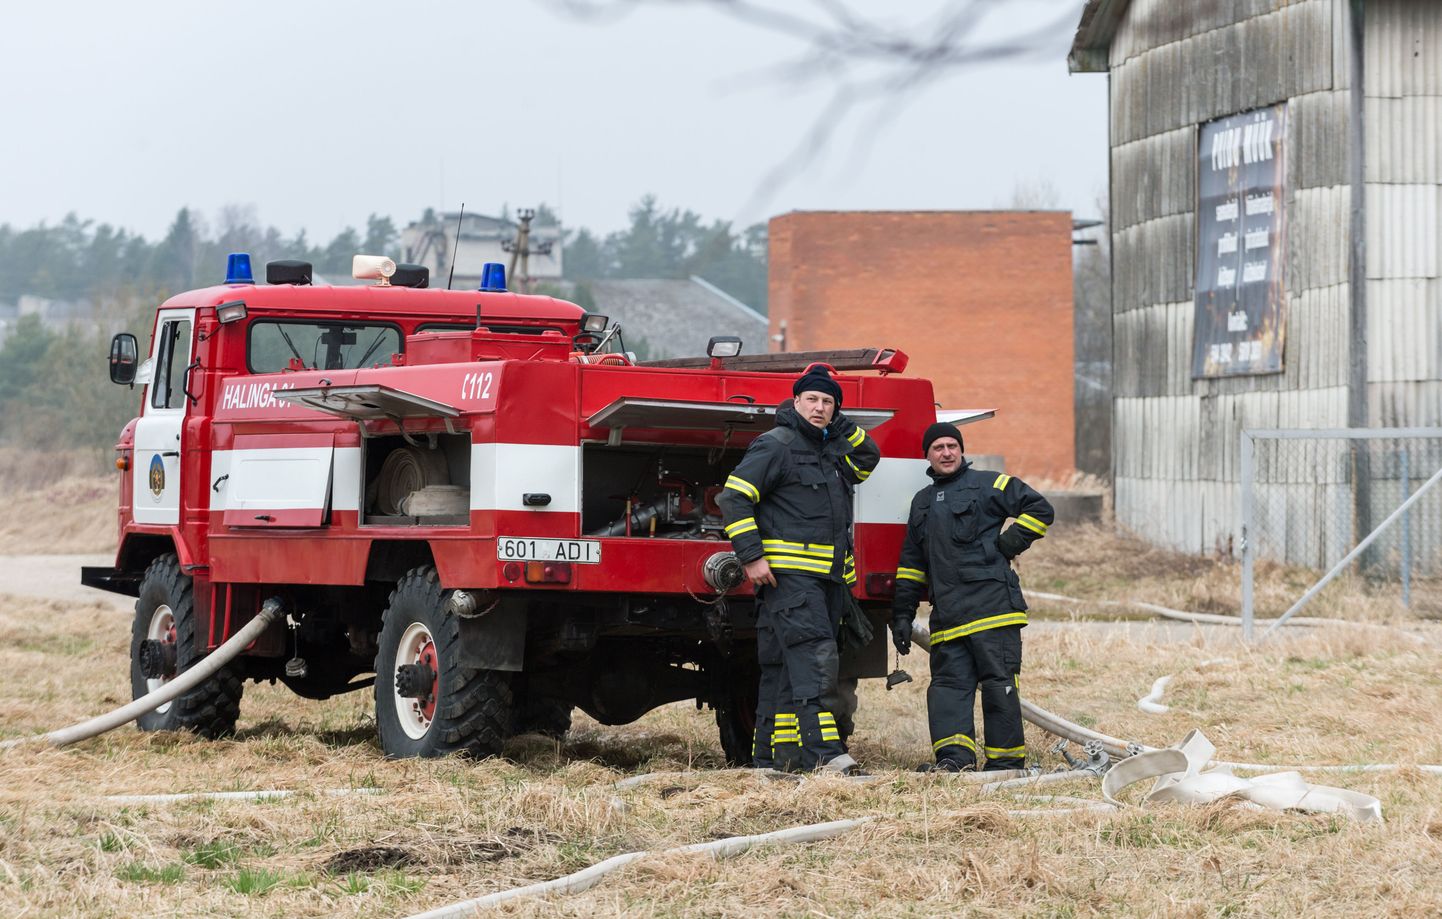 Pärnu-Jaagupi kutselised ja Halinga vabatahtlikud päästjad harjutasid Halinga vallas Libatses tulekahju kustutamist. Foto on illustratiivne!